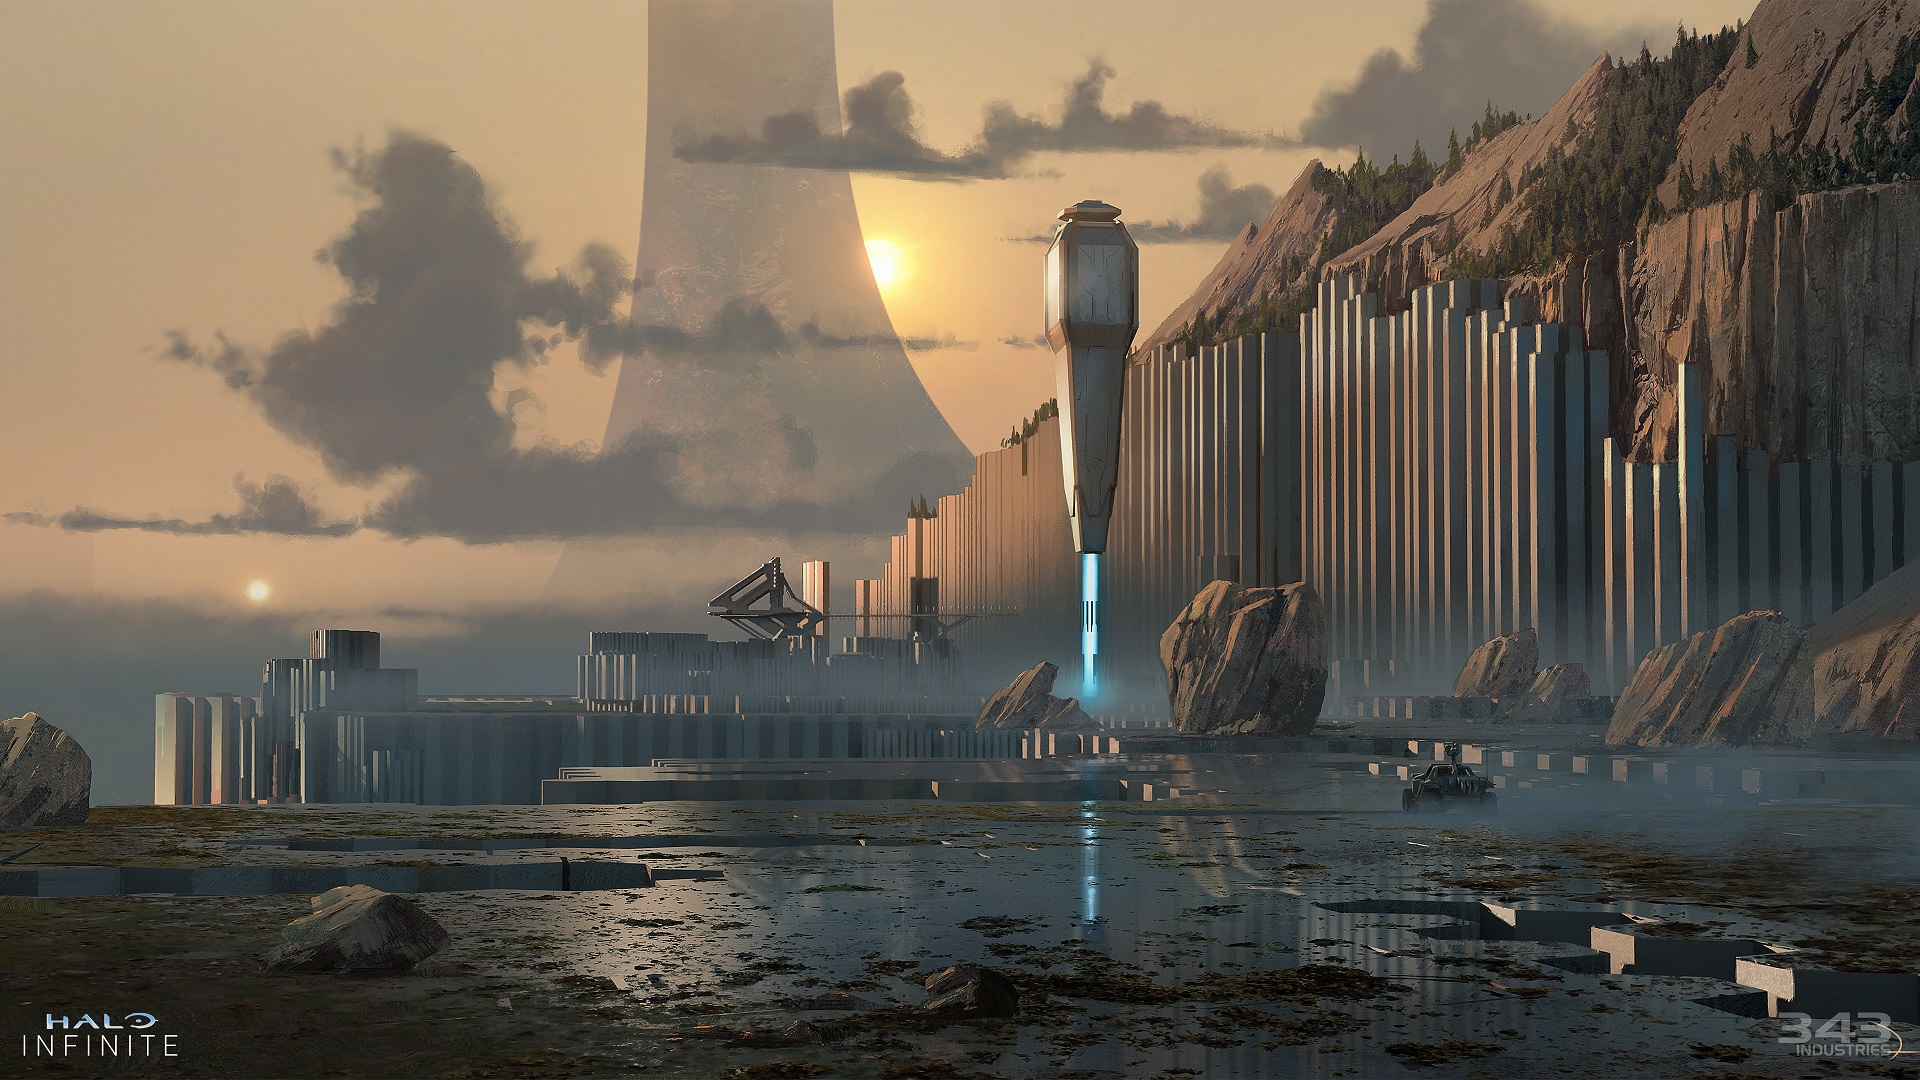 کانسپت هنری از کمپین داستانی بازی Halo Infinite